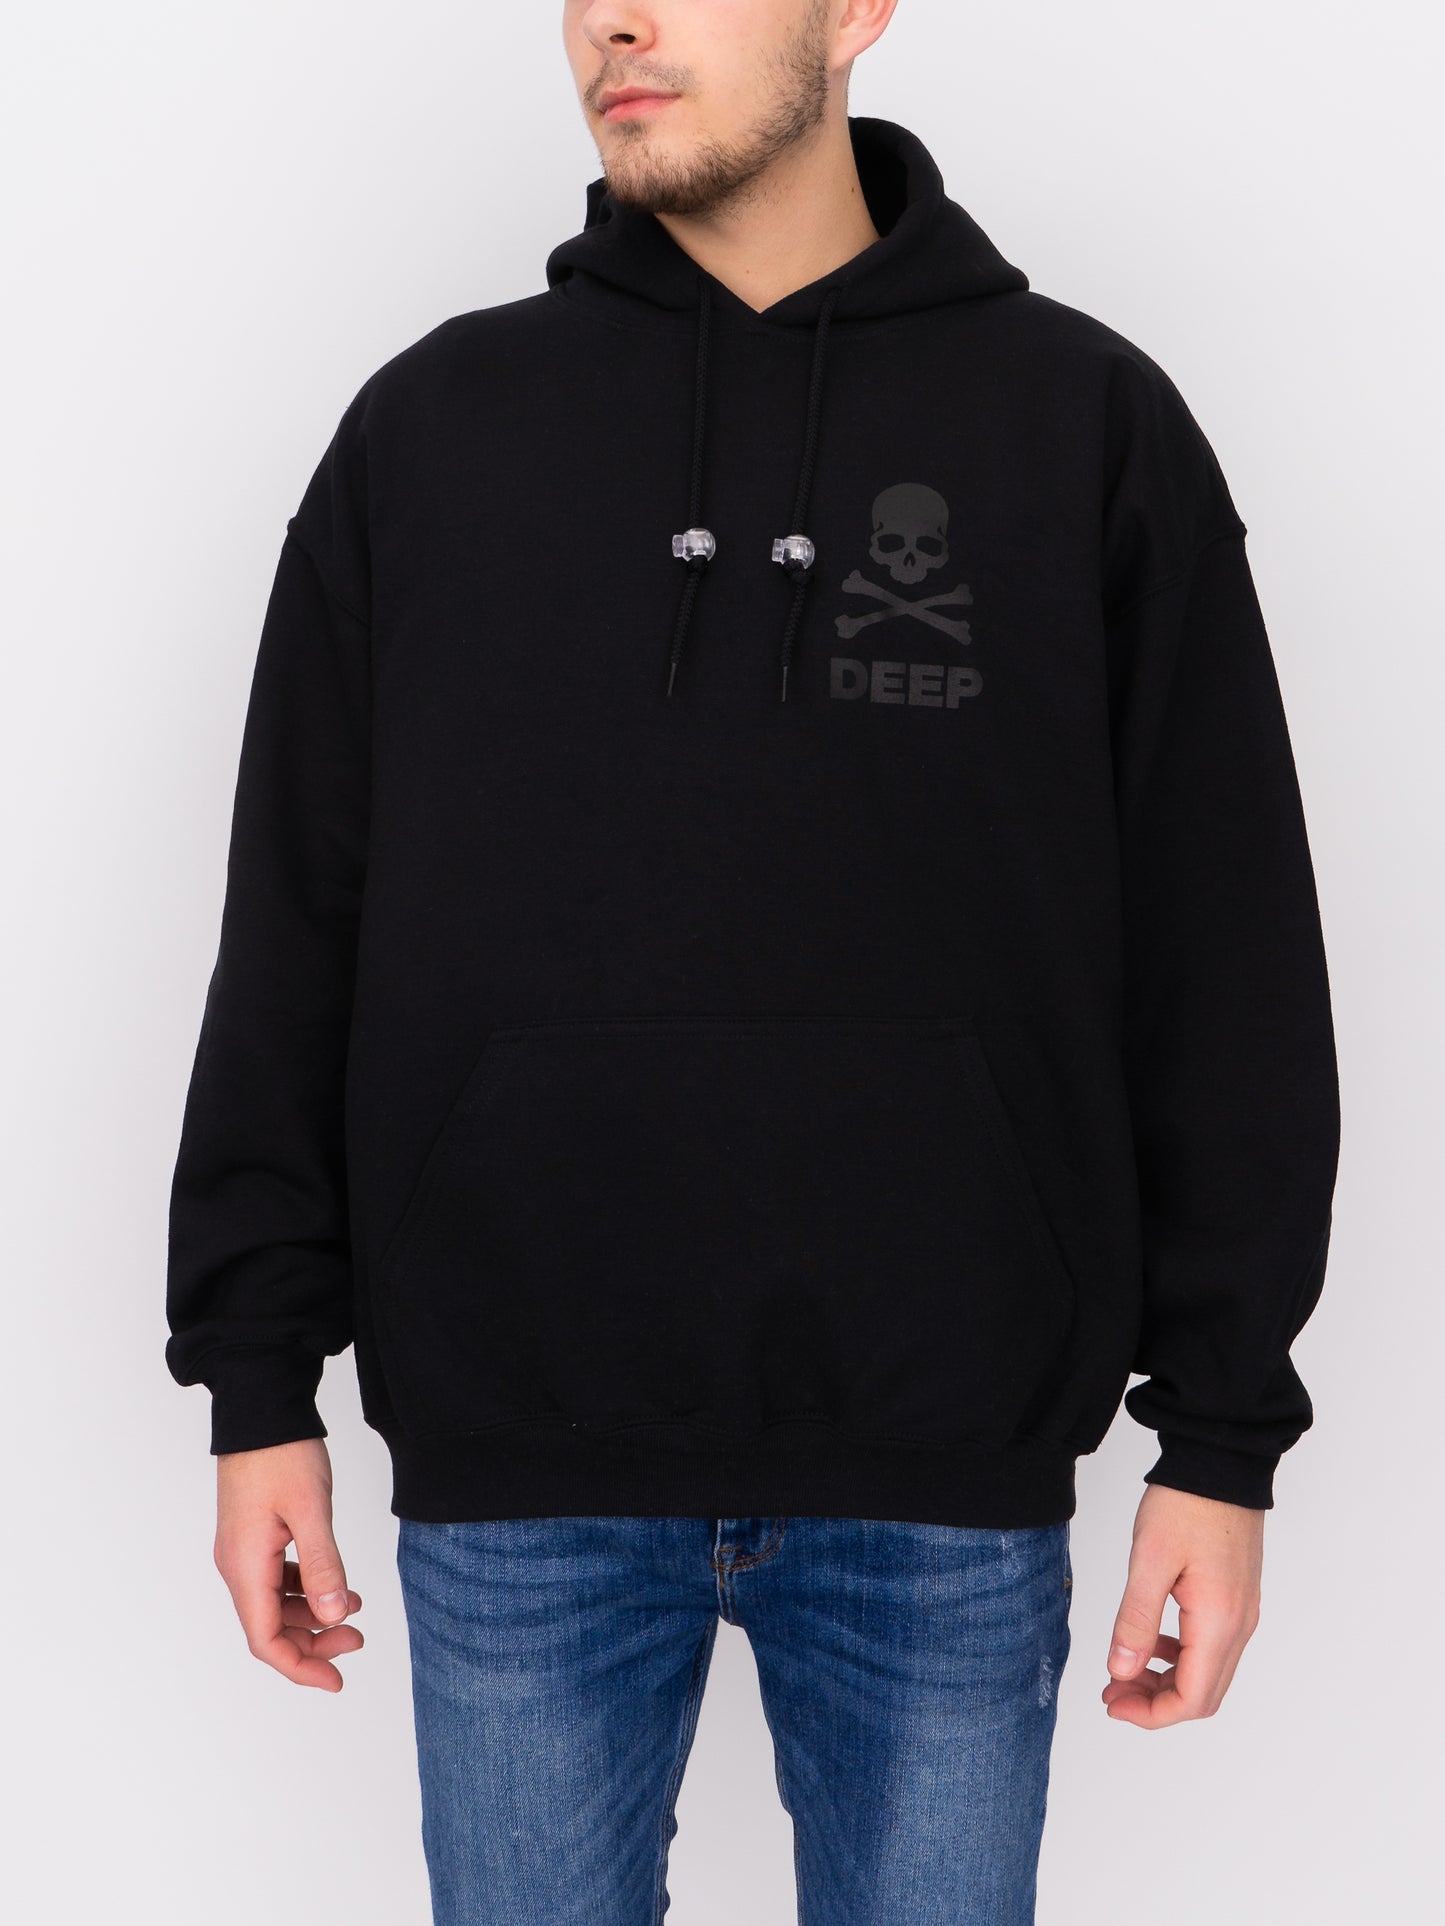 Crossbones Hooded Sweatshirt - Black / Black - DEEP Clothing